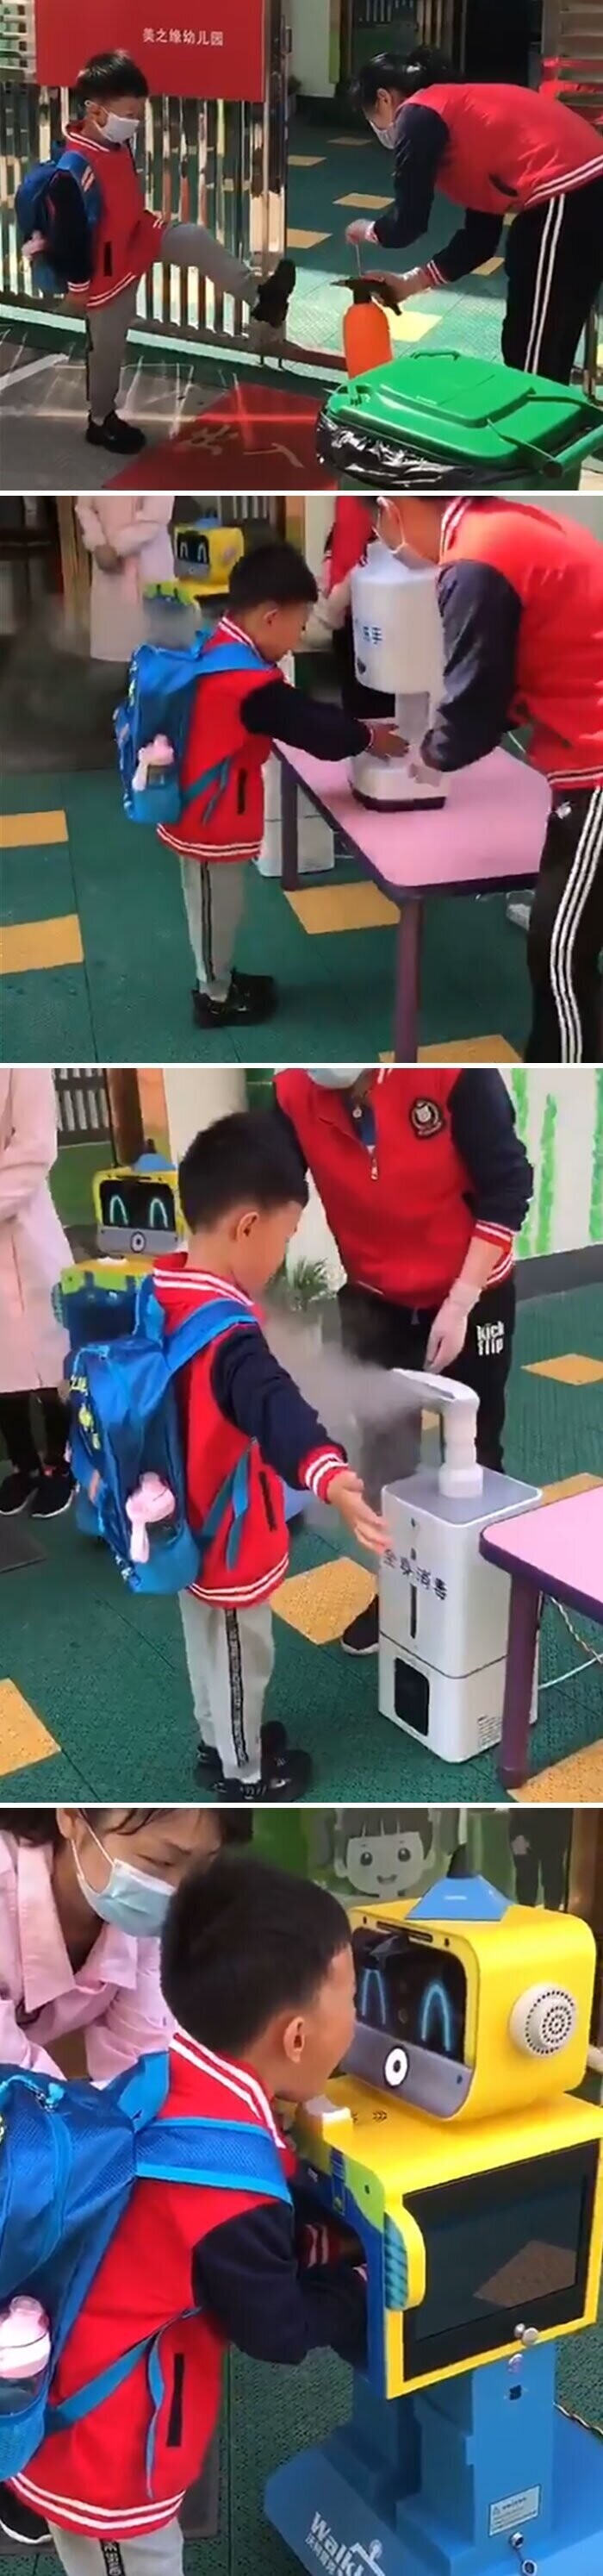 Перед школой китайским детям дезинфицируют обувь, руки, одежду, а робот проверяет их глаза, руки и горло